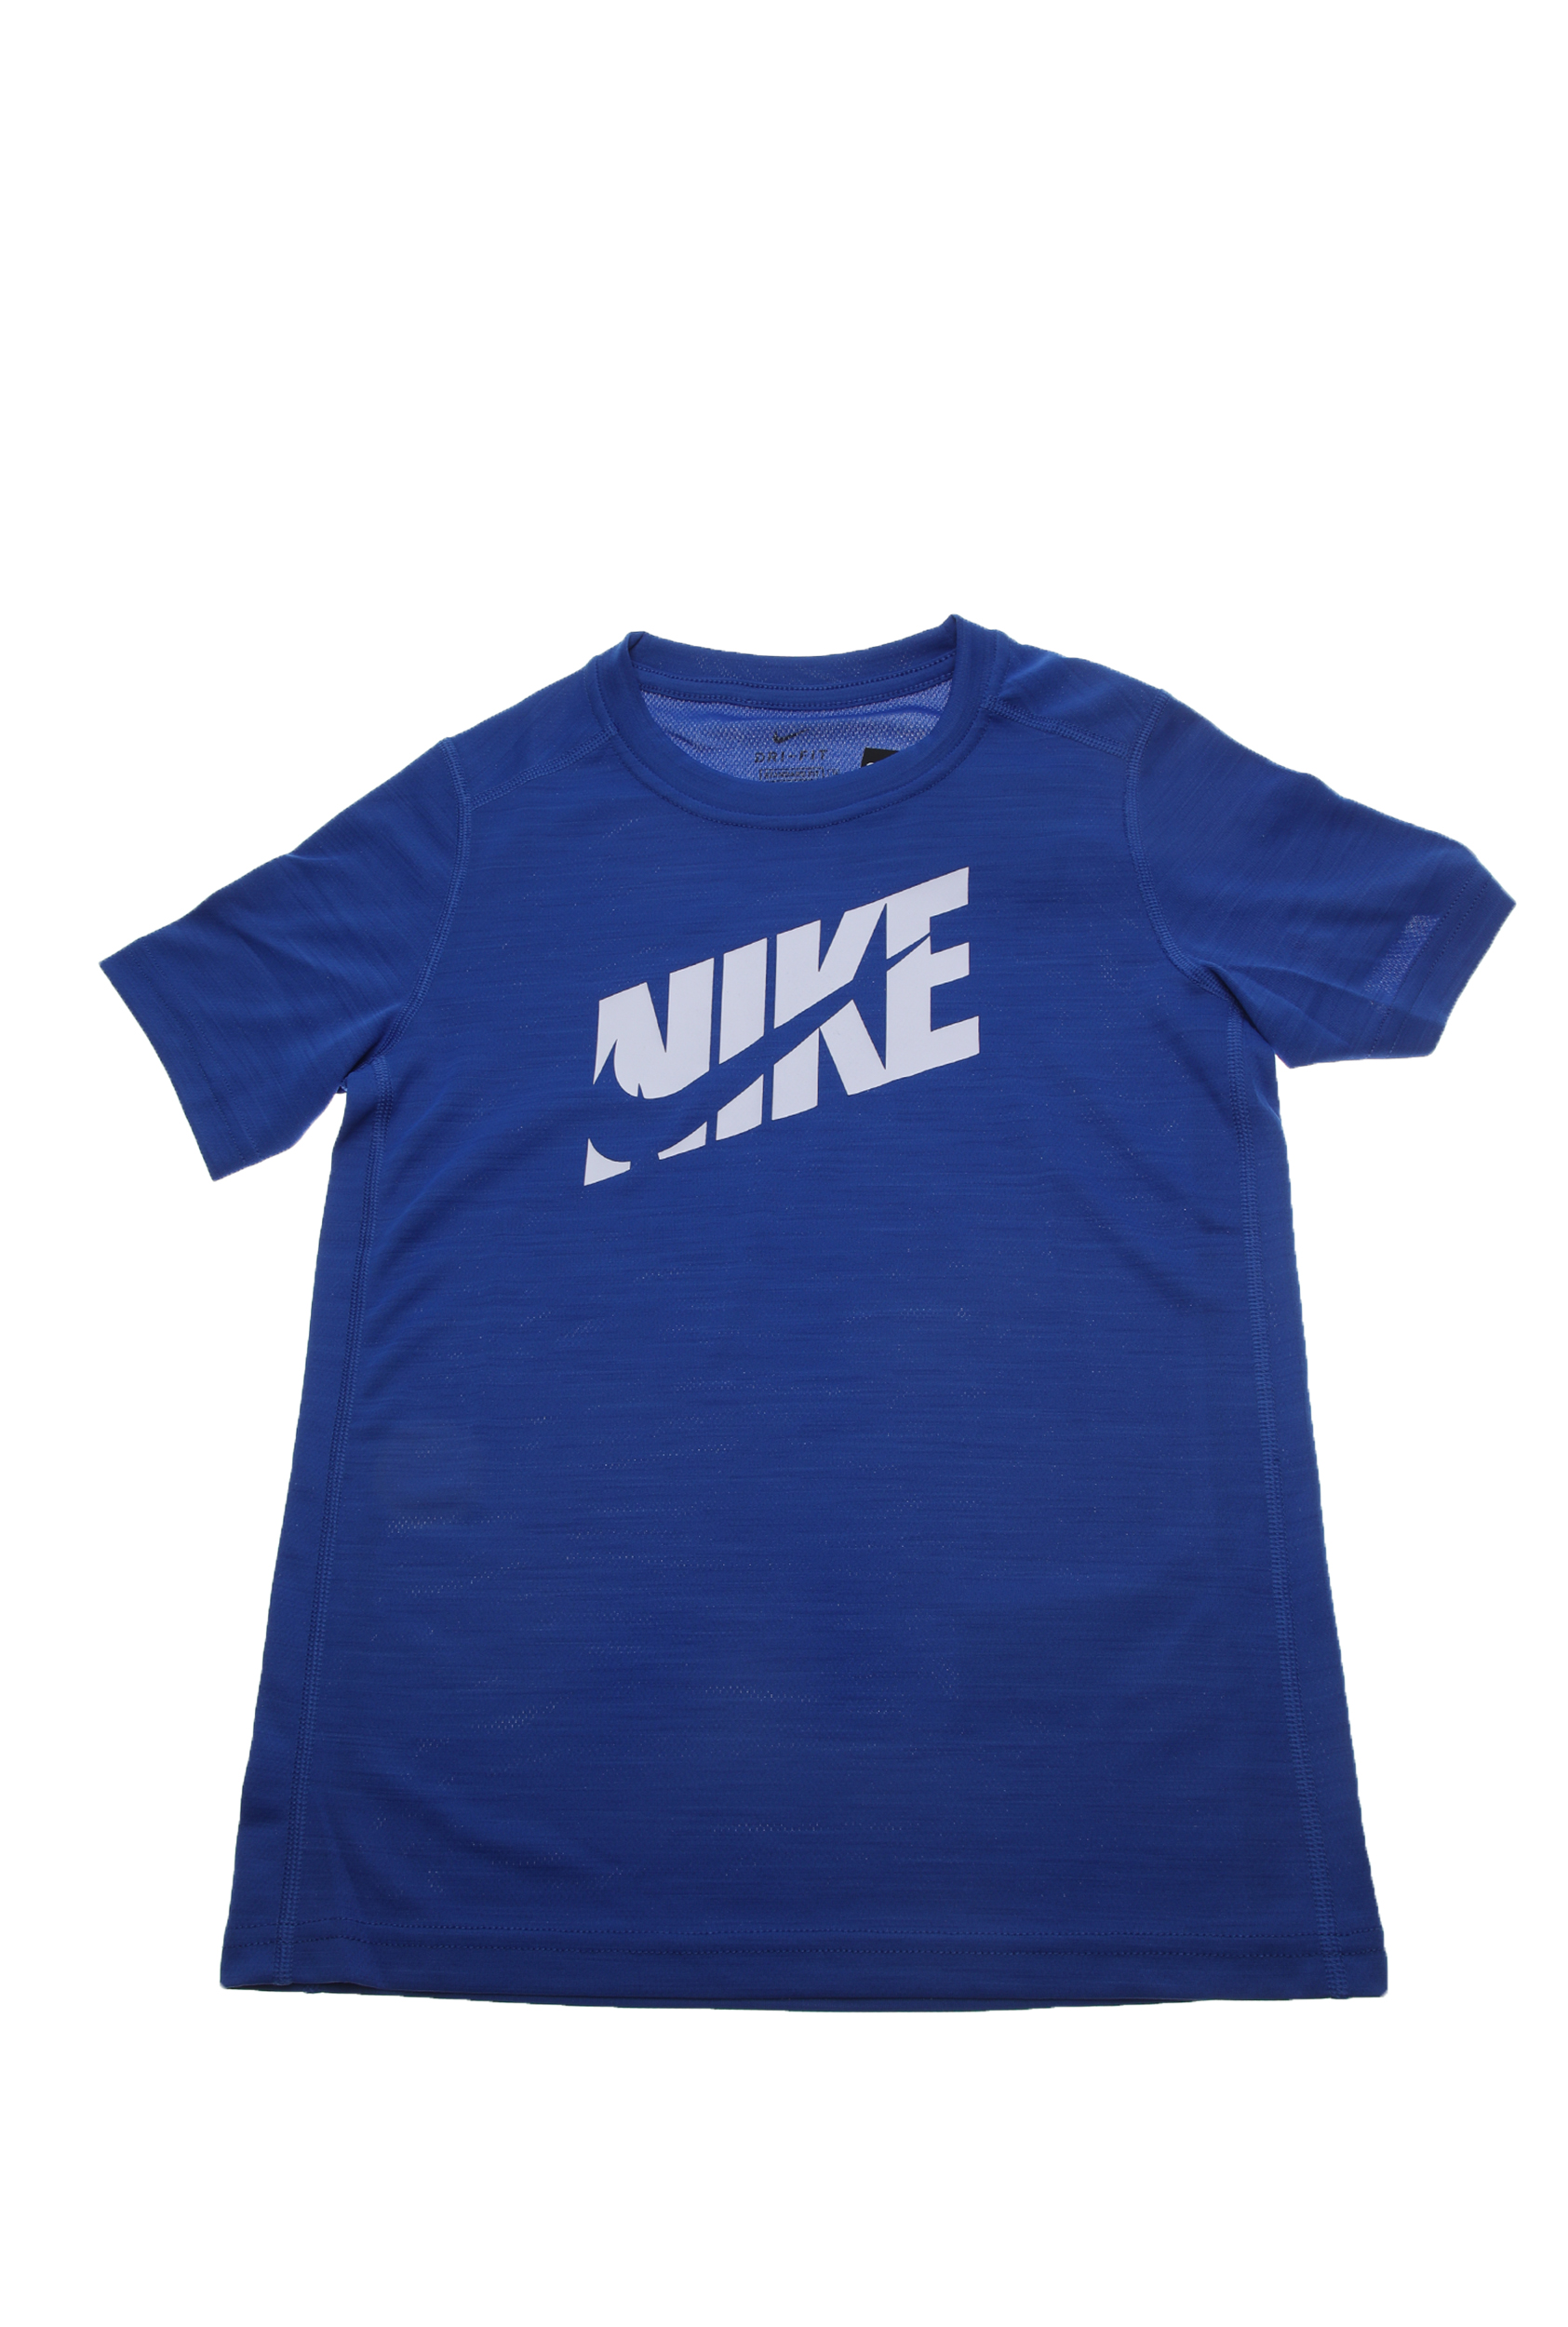 Παιδικά/Boys/Ρούχα/Αθλητικά NIKE - Παιδικό t-shirt ΝΙΚΕ HBR+ PERF ρουά